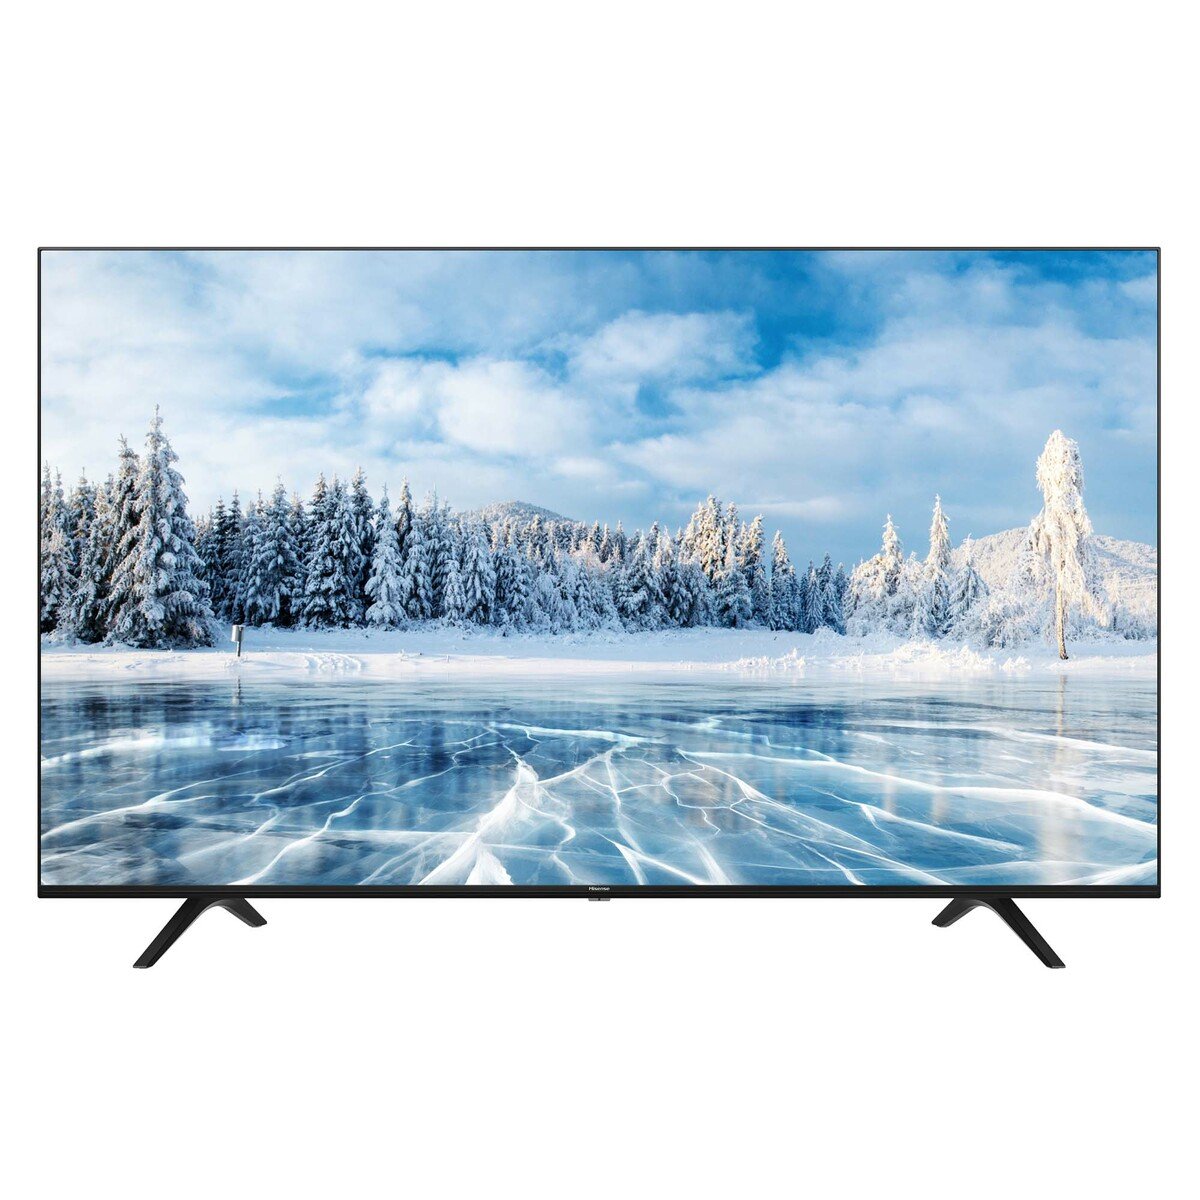 Hisense 4K Ultra HD Smart LED TV 65A7120F 65"